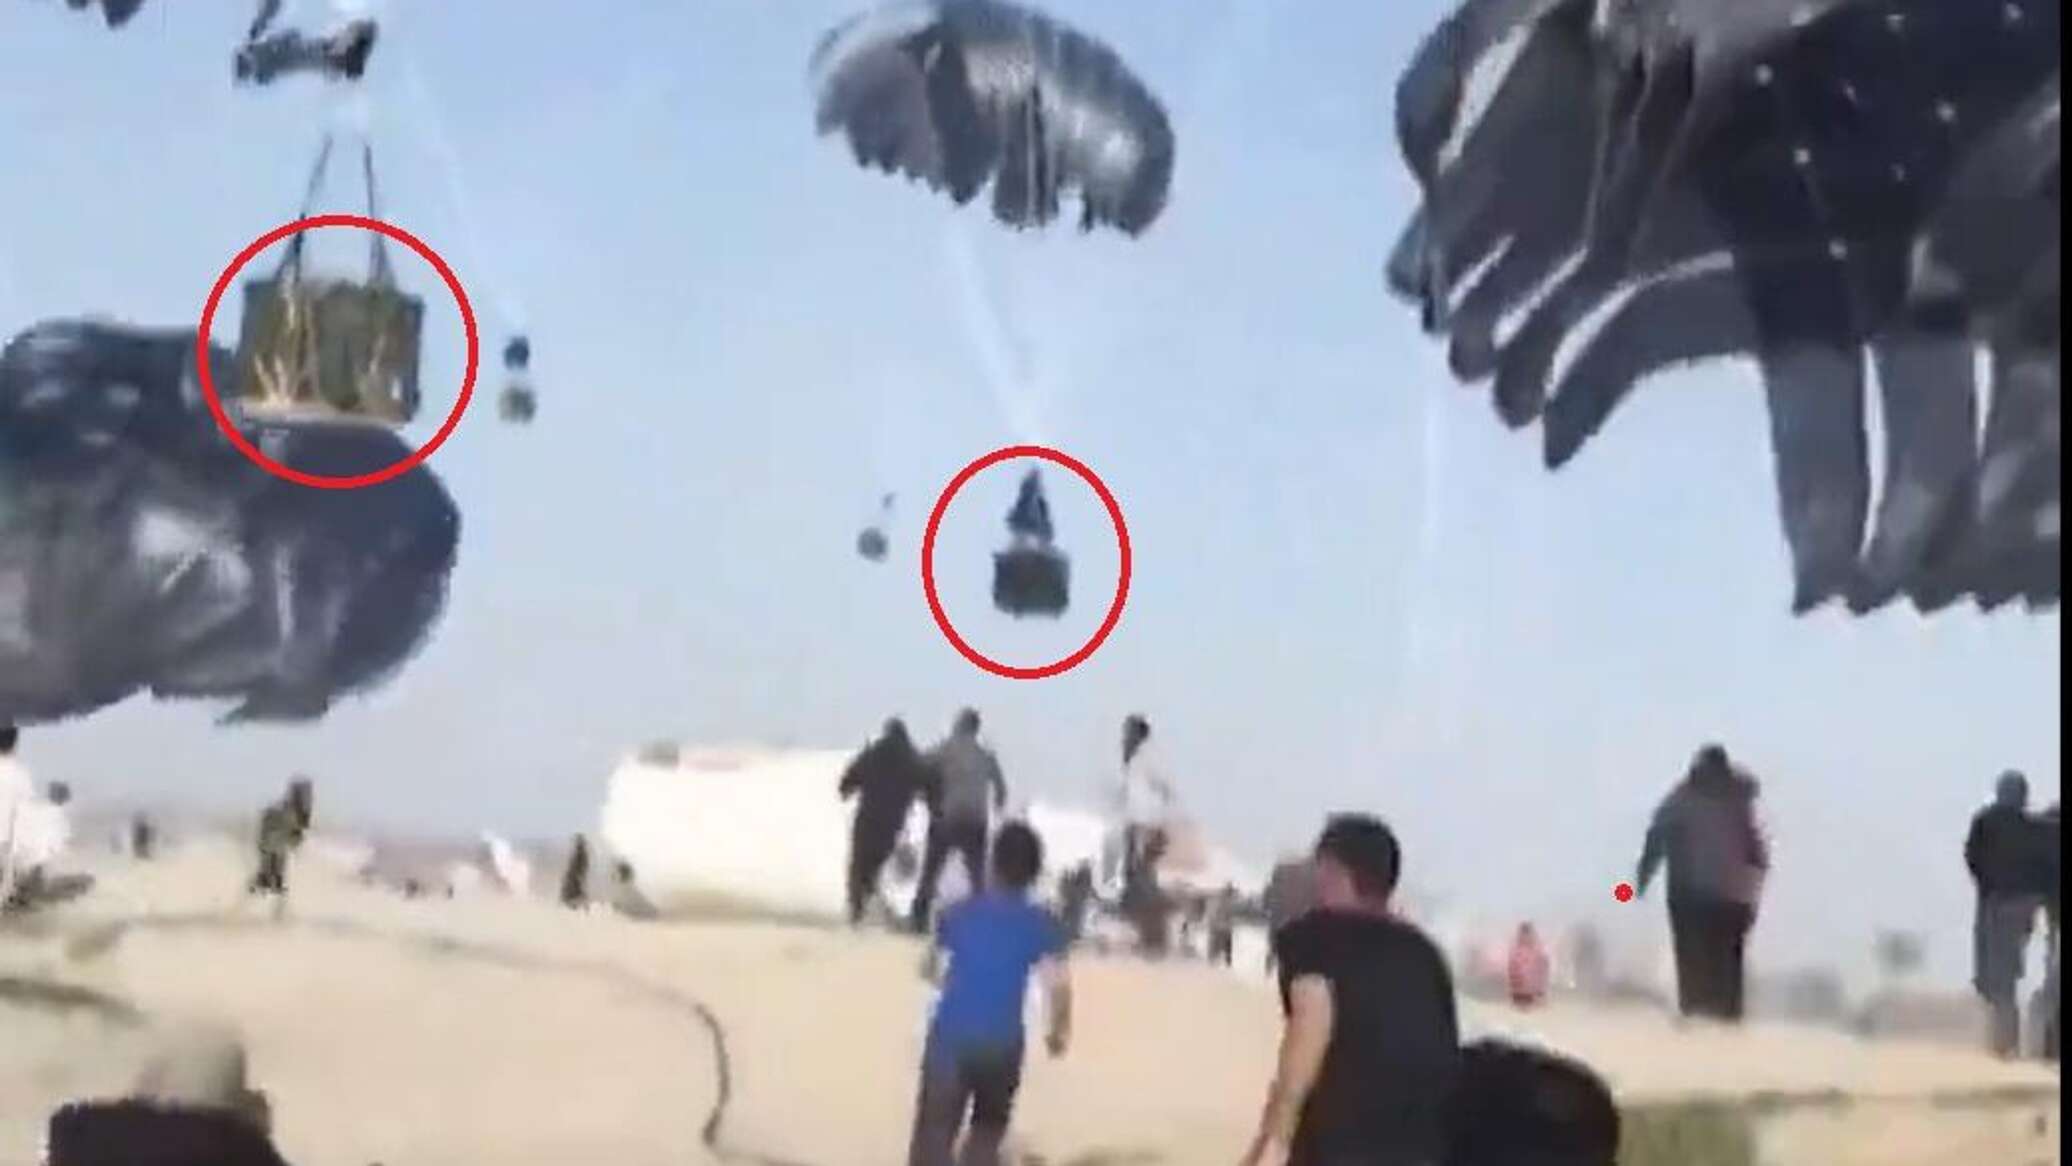 "جناح يلقي الطعام وآخر الموت"... جدل حول طائرات المساعدات الأمريكية لغزة... صور وفيديو